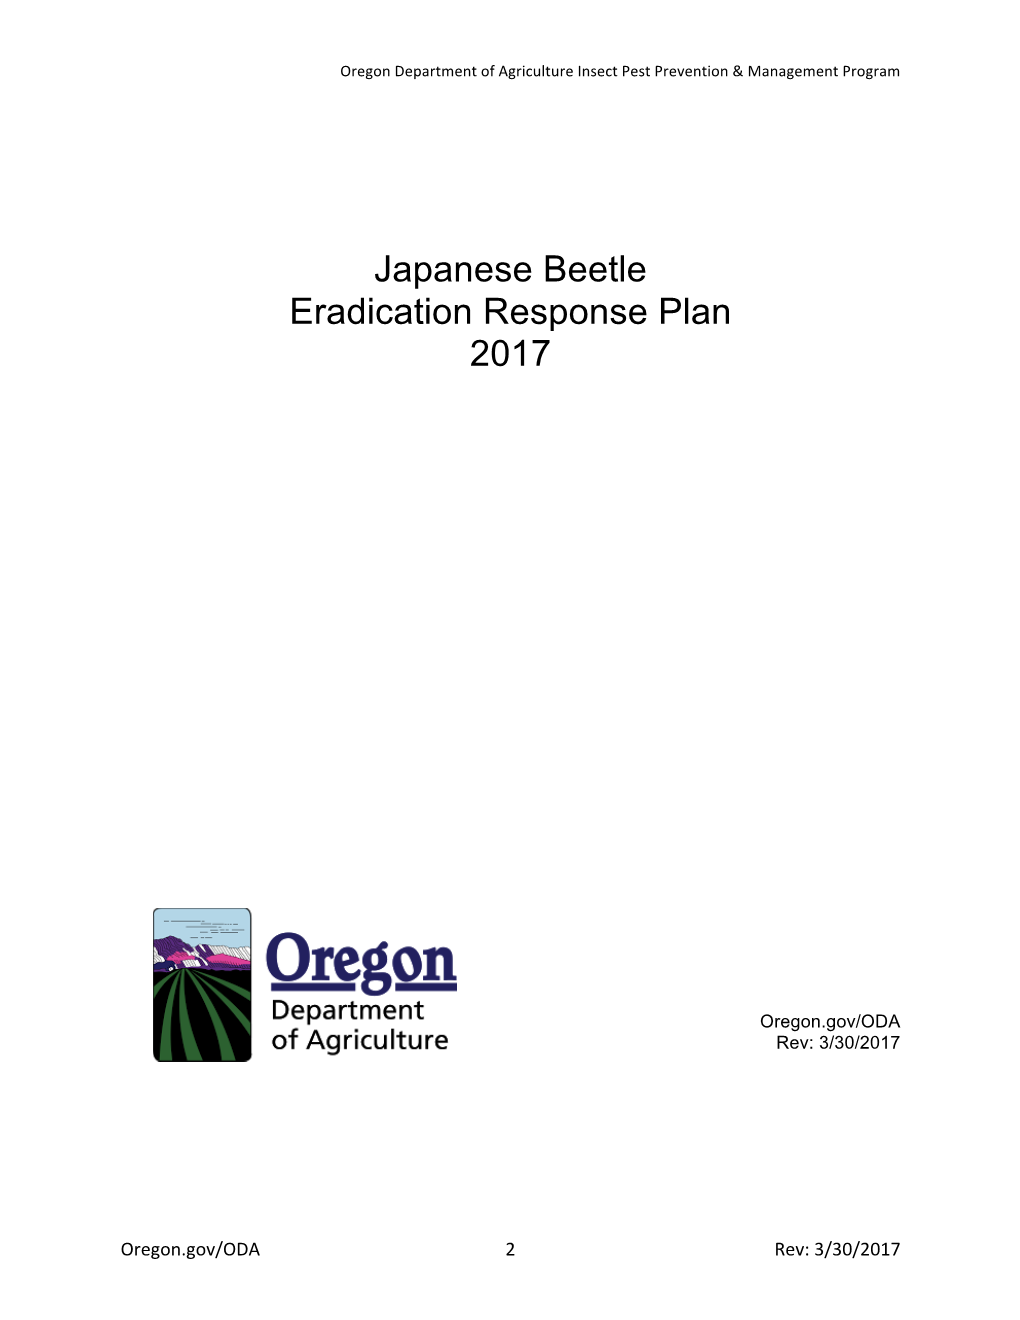 Japanese Beetle Eradication Response Plan 2017